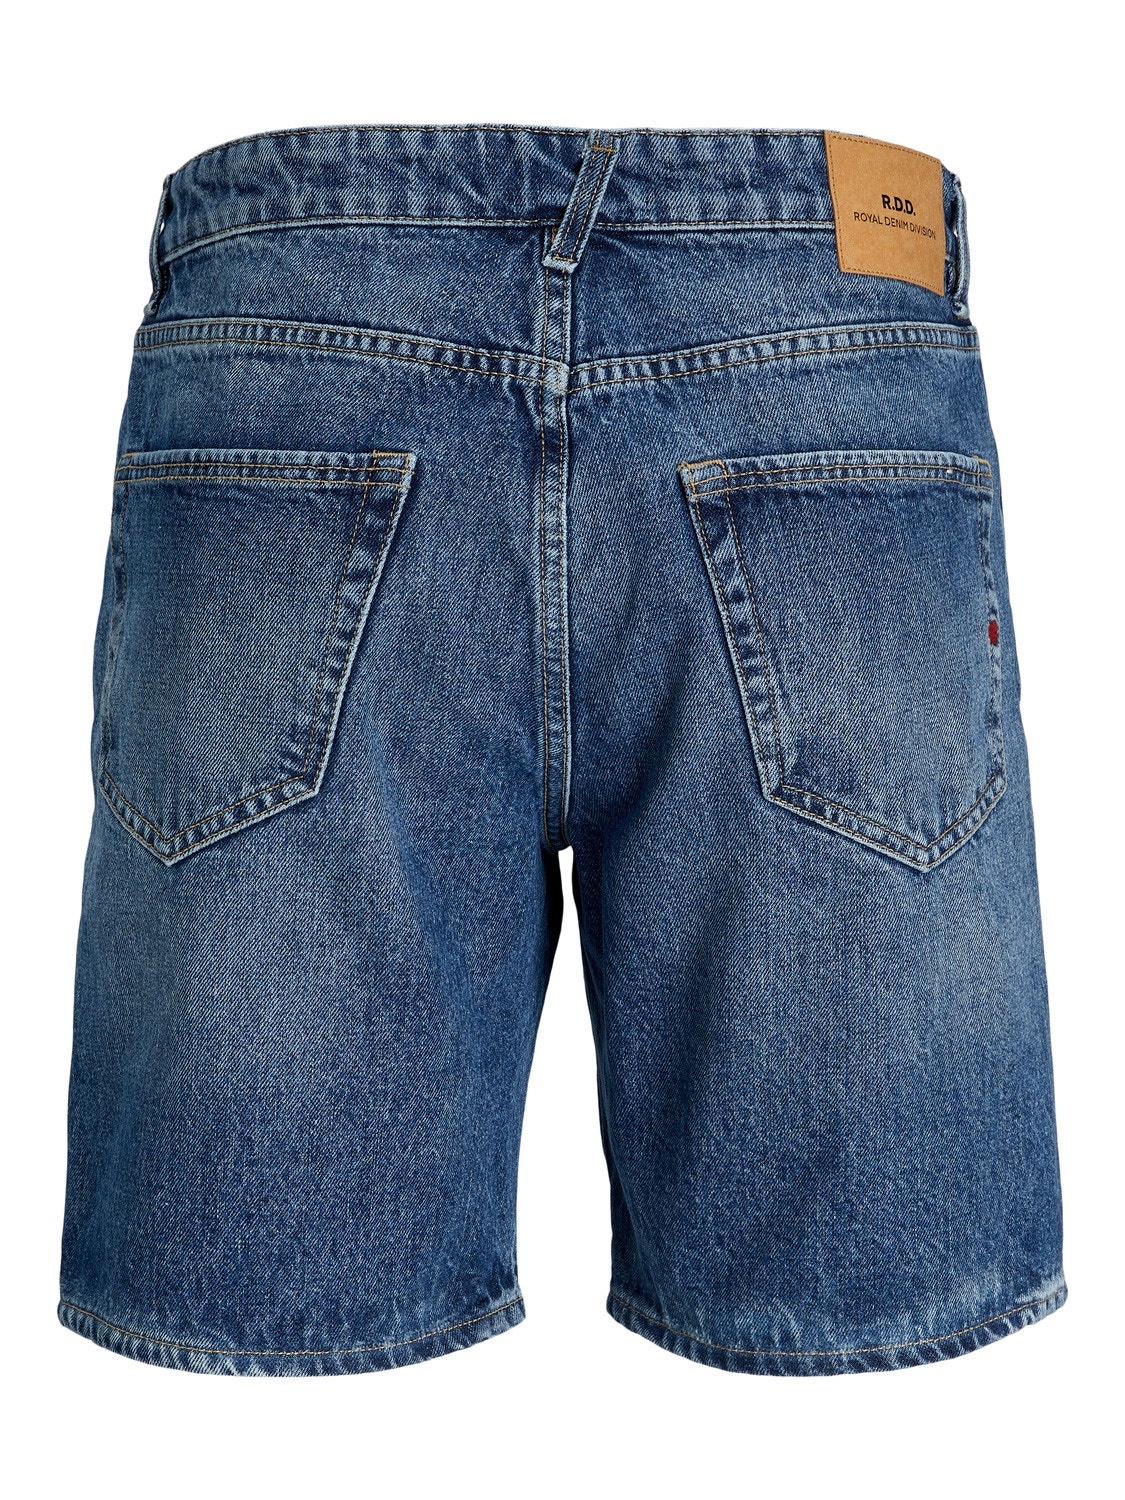 Jack & Jones RDD Bermuda in jeans Loose Fit -Blue Denim - 12252362